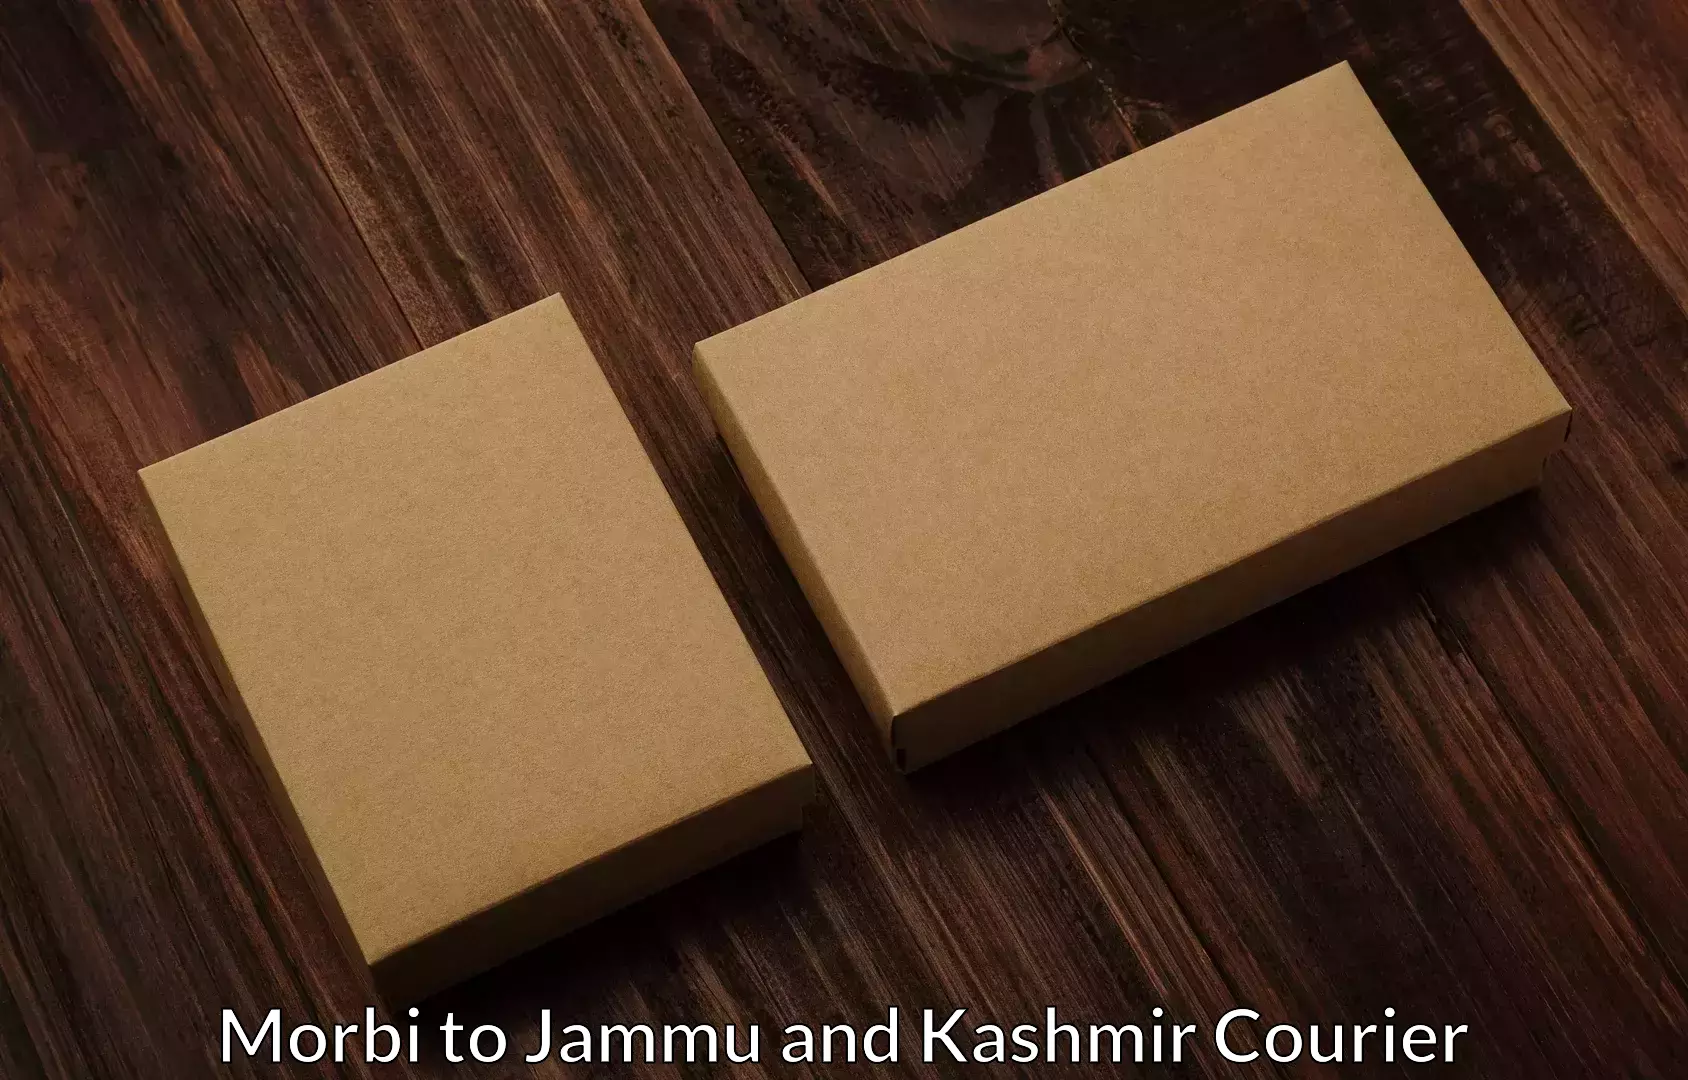 Professional goods transport Morbi to Jammu and Kashmir